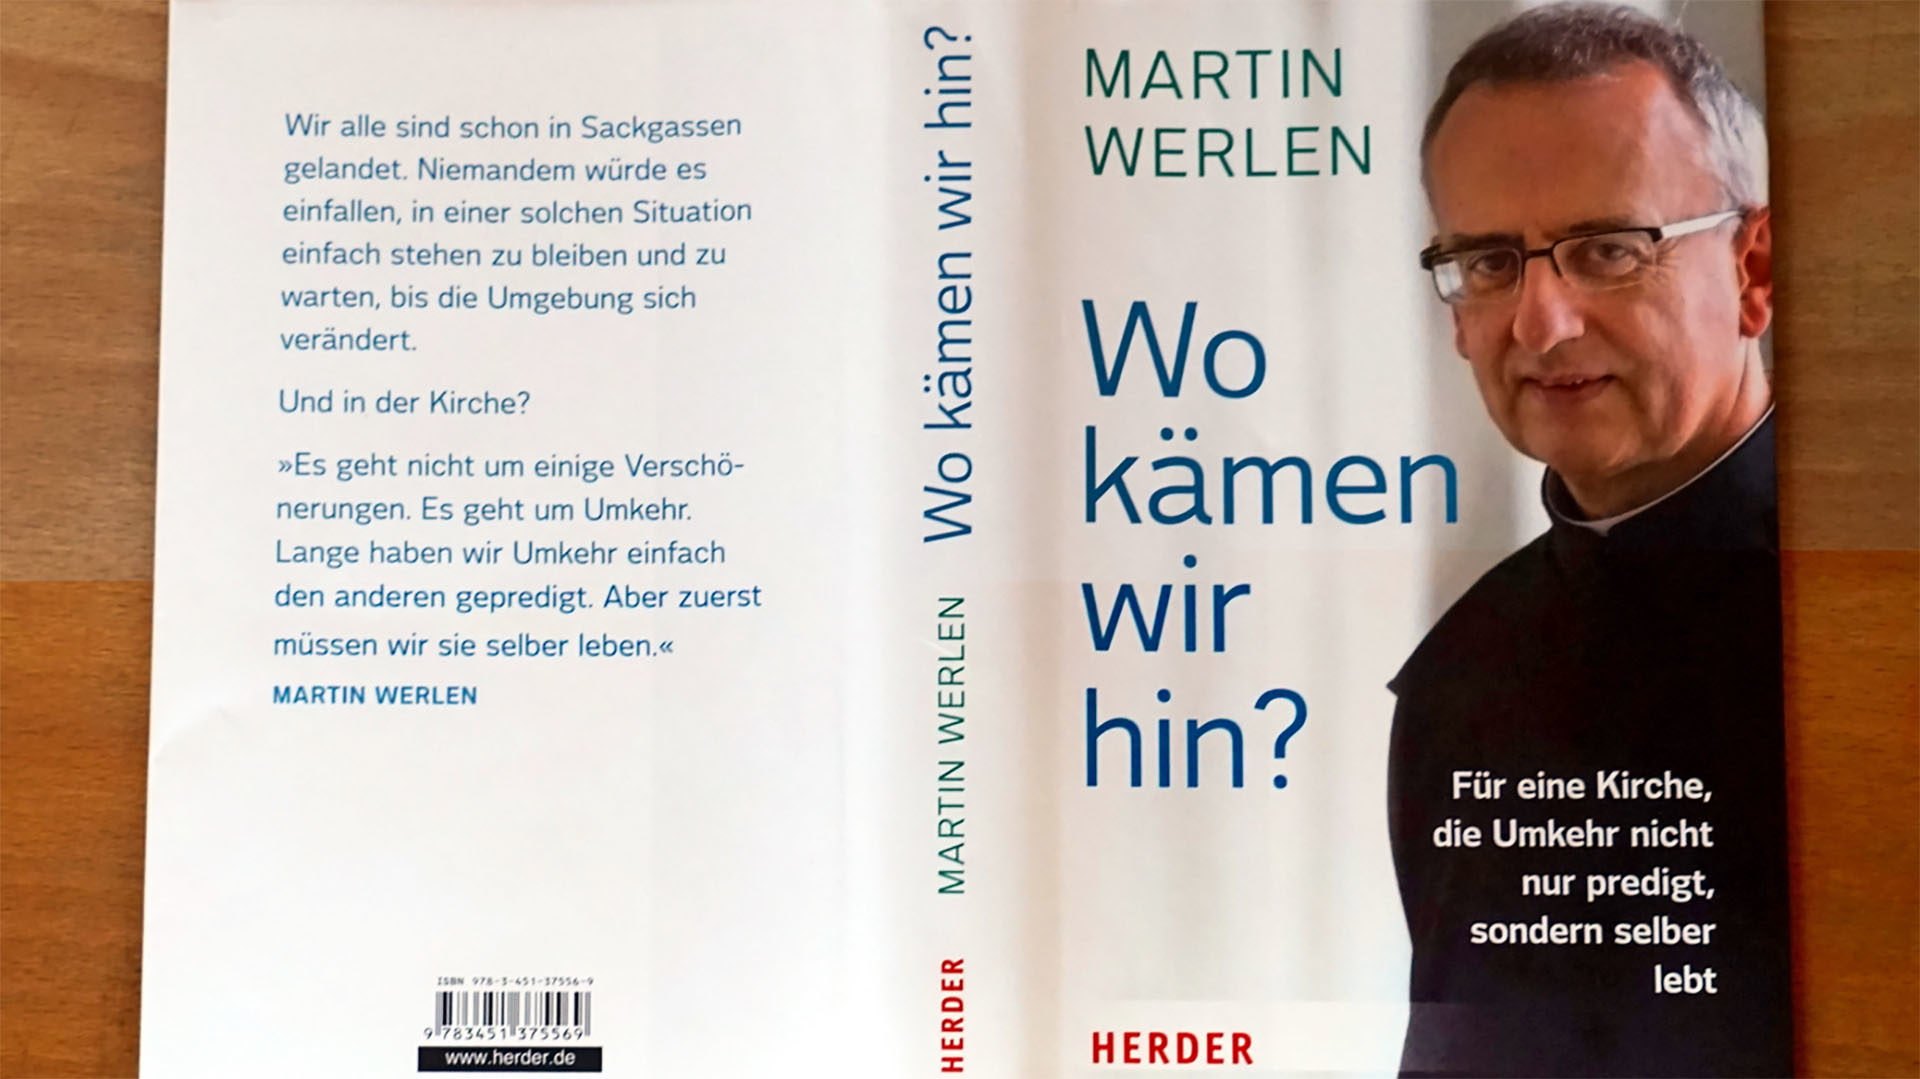 Le nouveau livre de Martin Werlen sur la place des femmes dans l'Eglise (Photo: G. Scherrer, kath.ch)